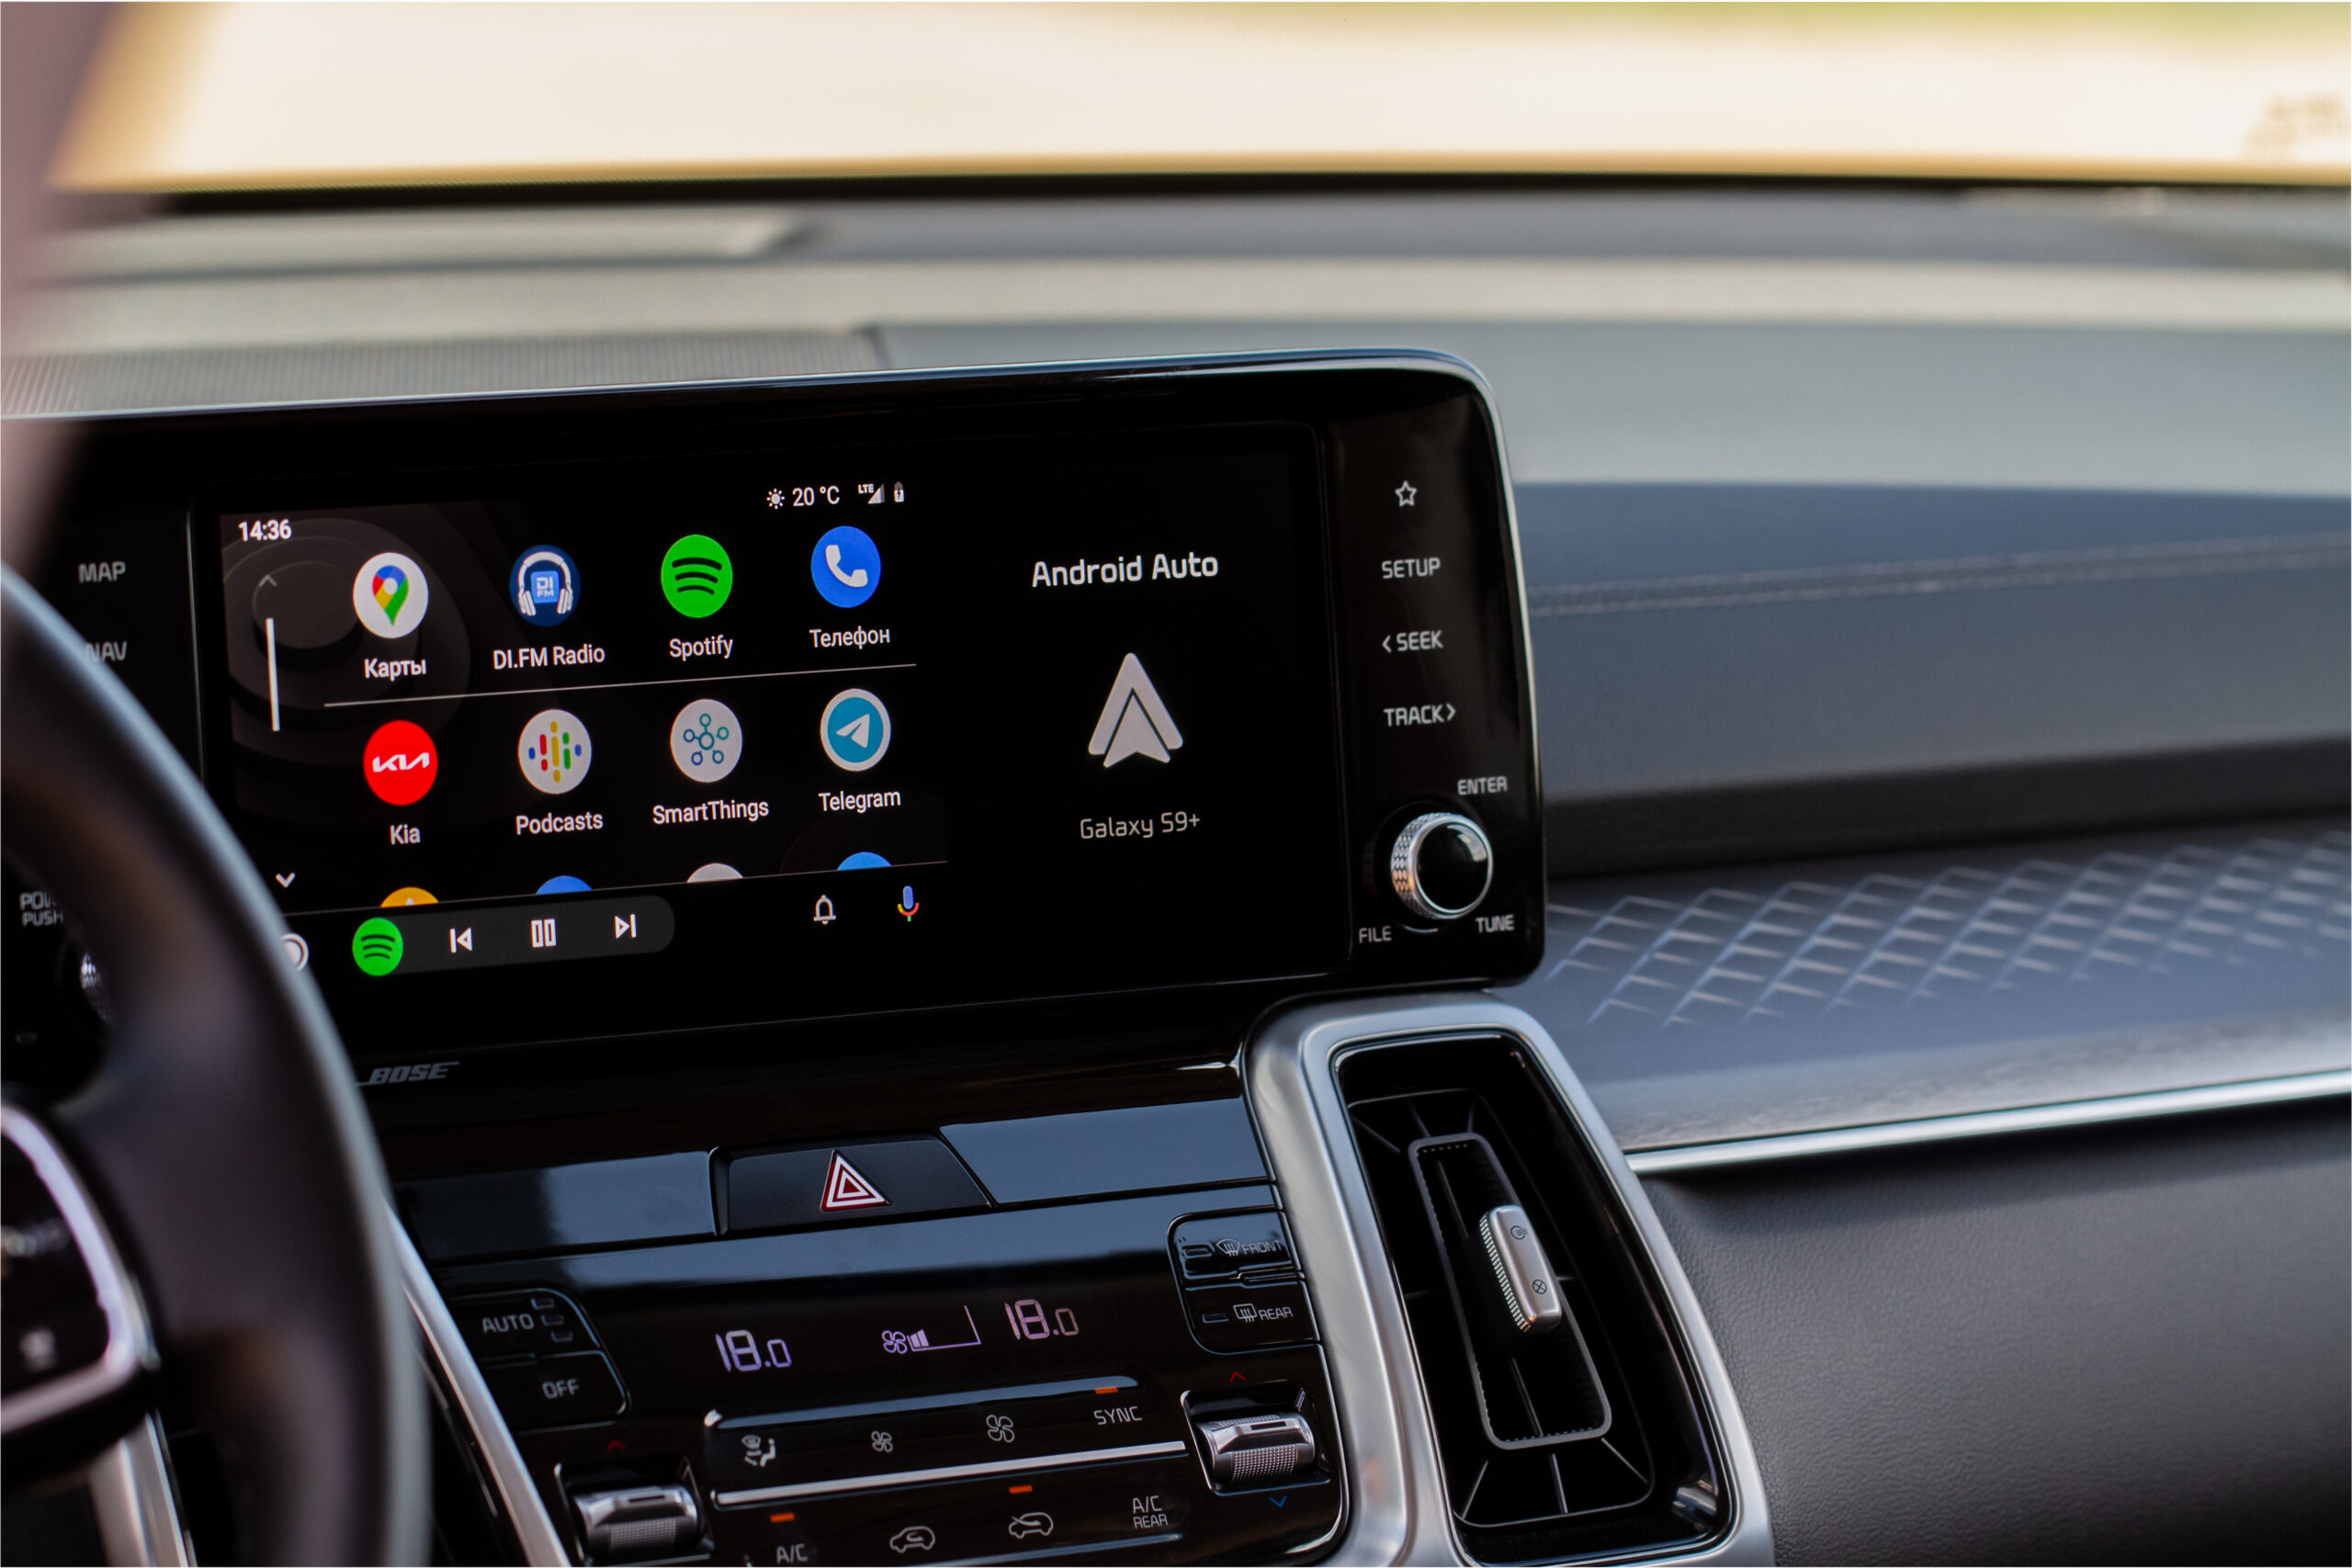 Андроид авто fermata. Android auto. Android auto на экране автомобиля. Под система с игрой внутри на экране.